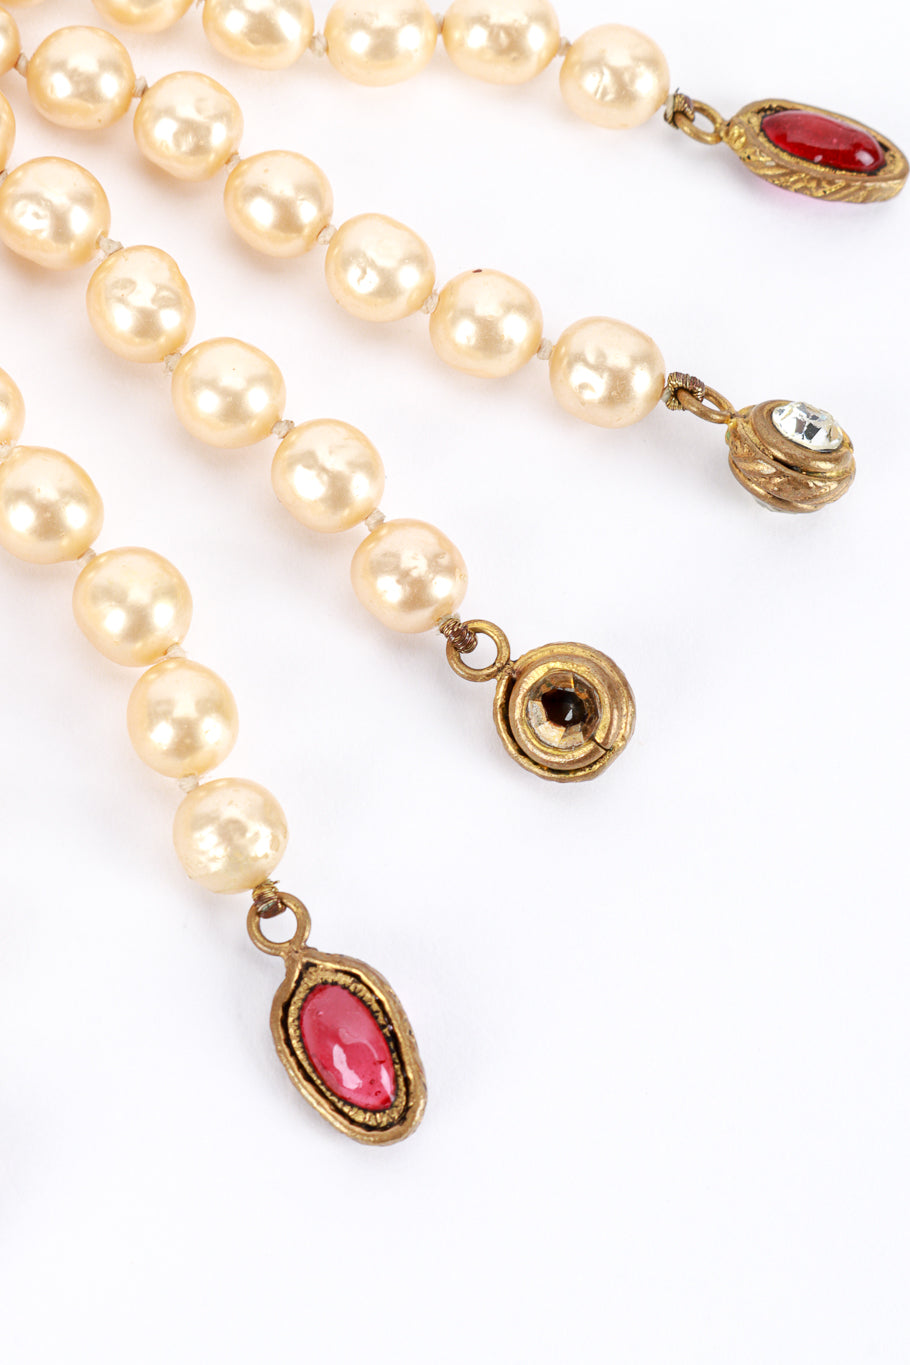 Vintage Chanel Pearl Tassel Wrap Necklace end charm closeup @recess la